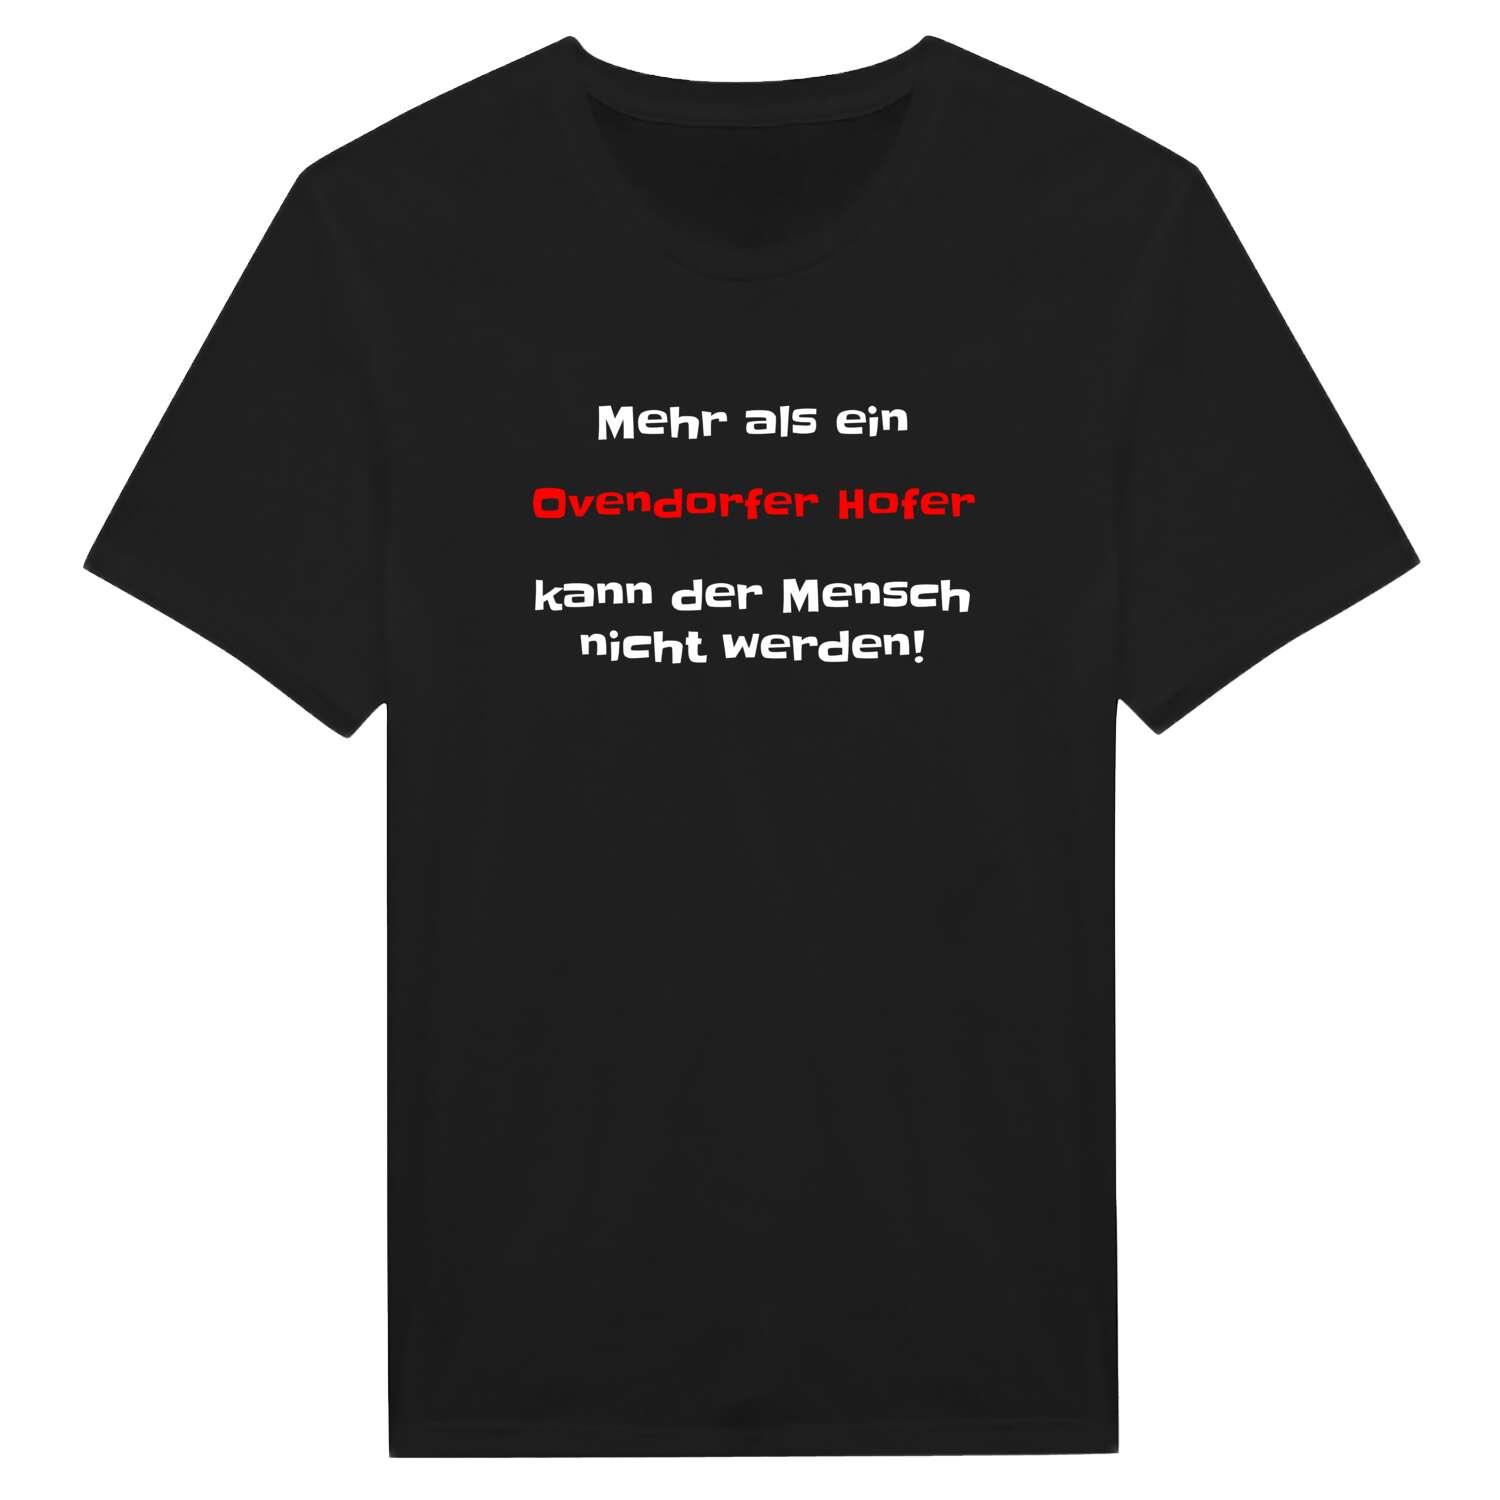 Ovendorfer Hof T-Shirt »Mehr als ein«